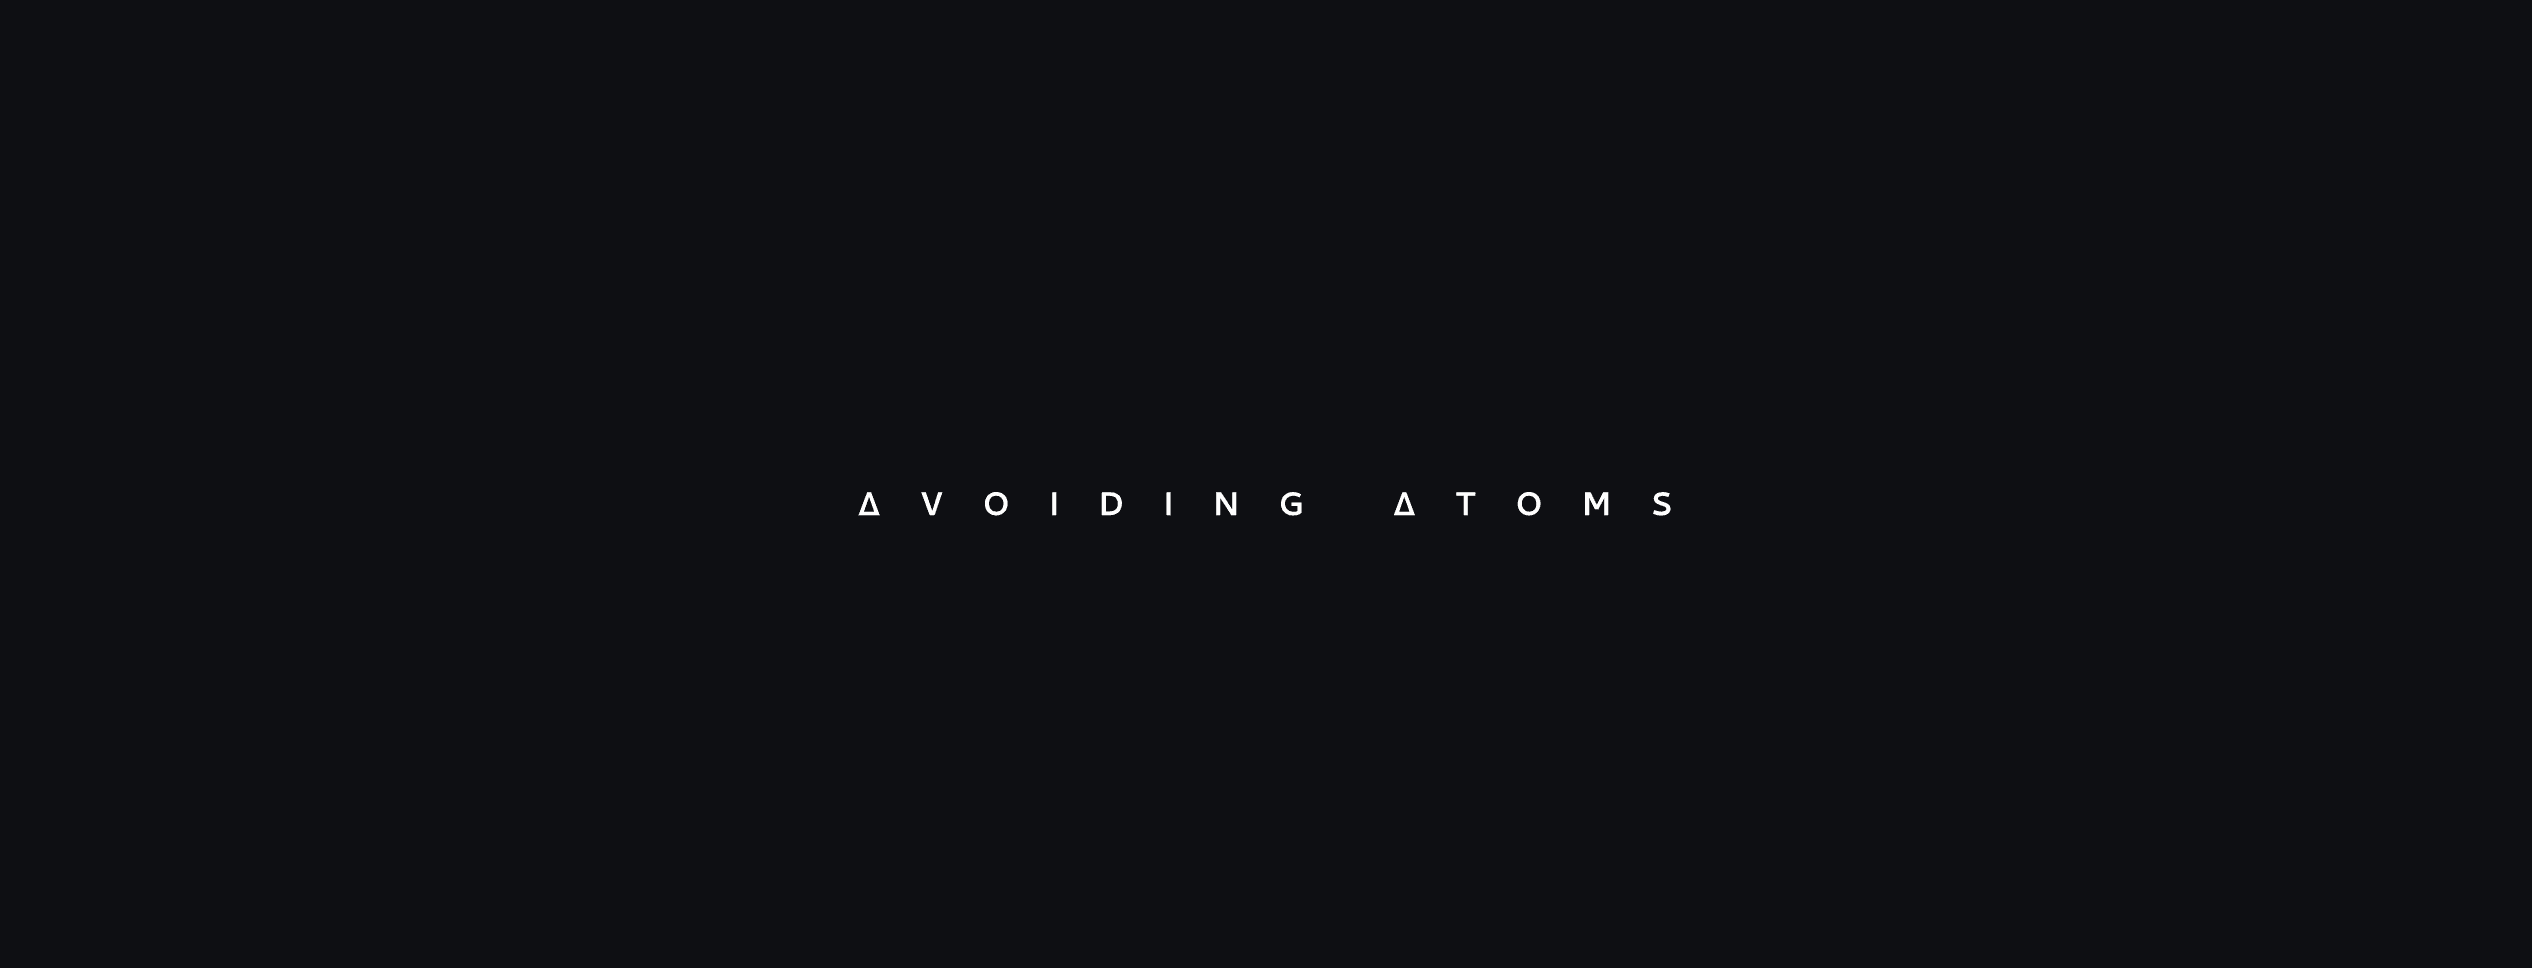 Avoiding Atoms